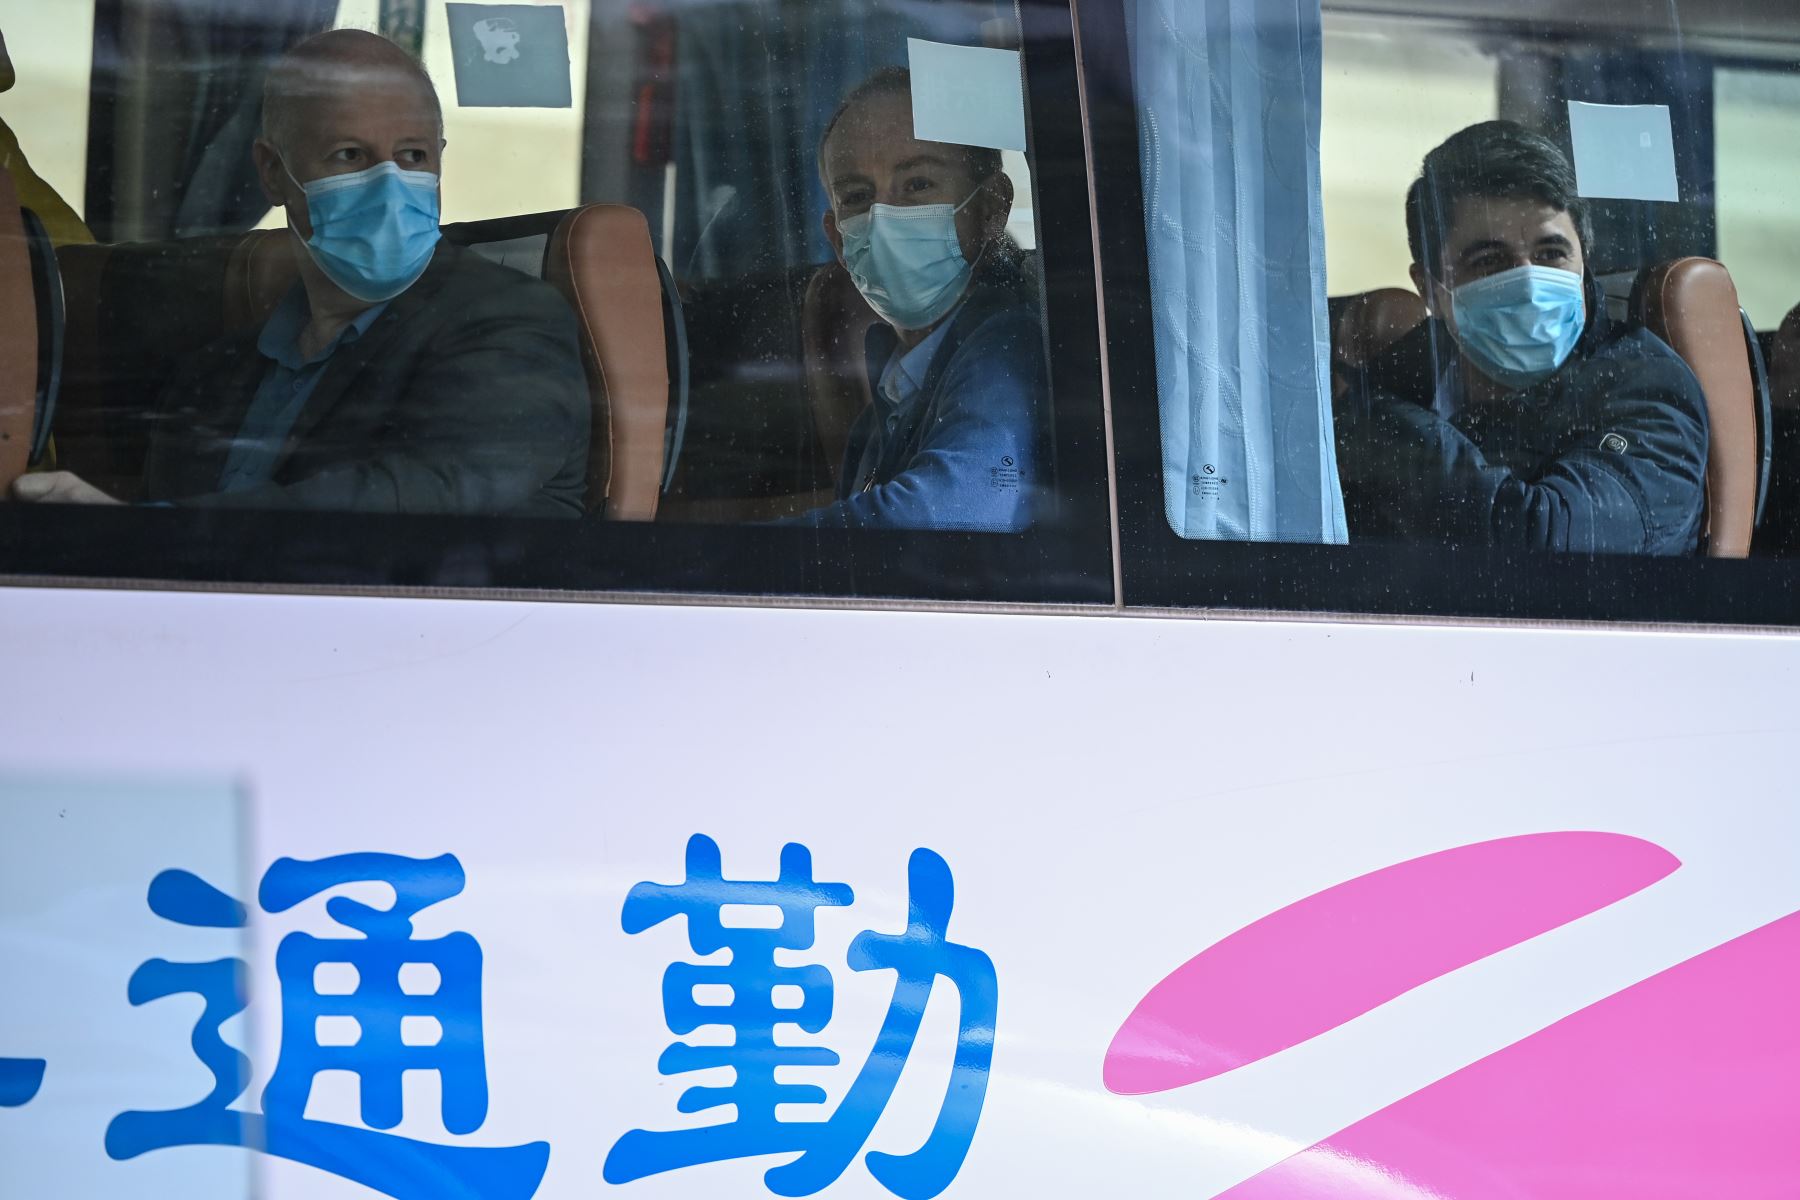 La investigación, que China ha tardado más de un año en organizar, es un tema sensible para el régimen comunista, que desea liberarse de cualquier responsabilidad en el origen de la epidemia. Foto: AFP